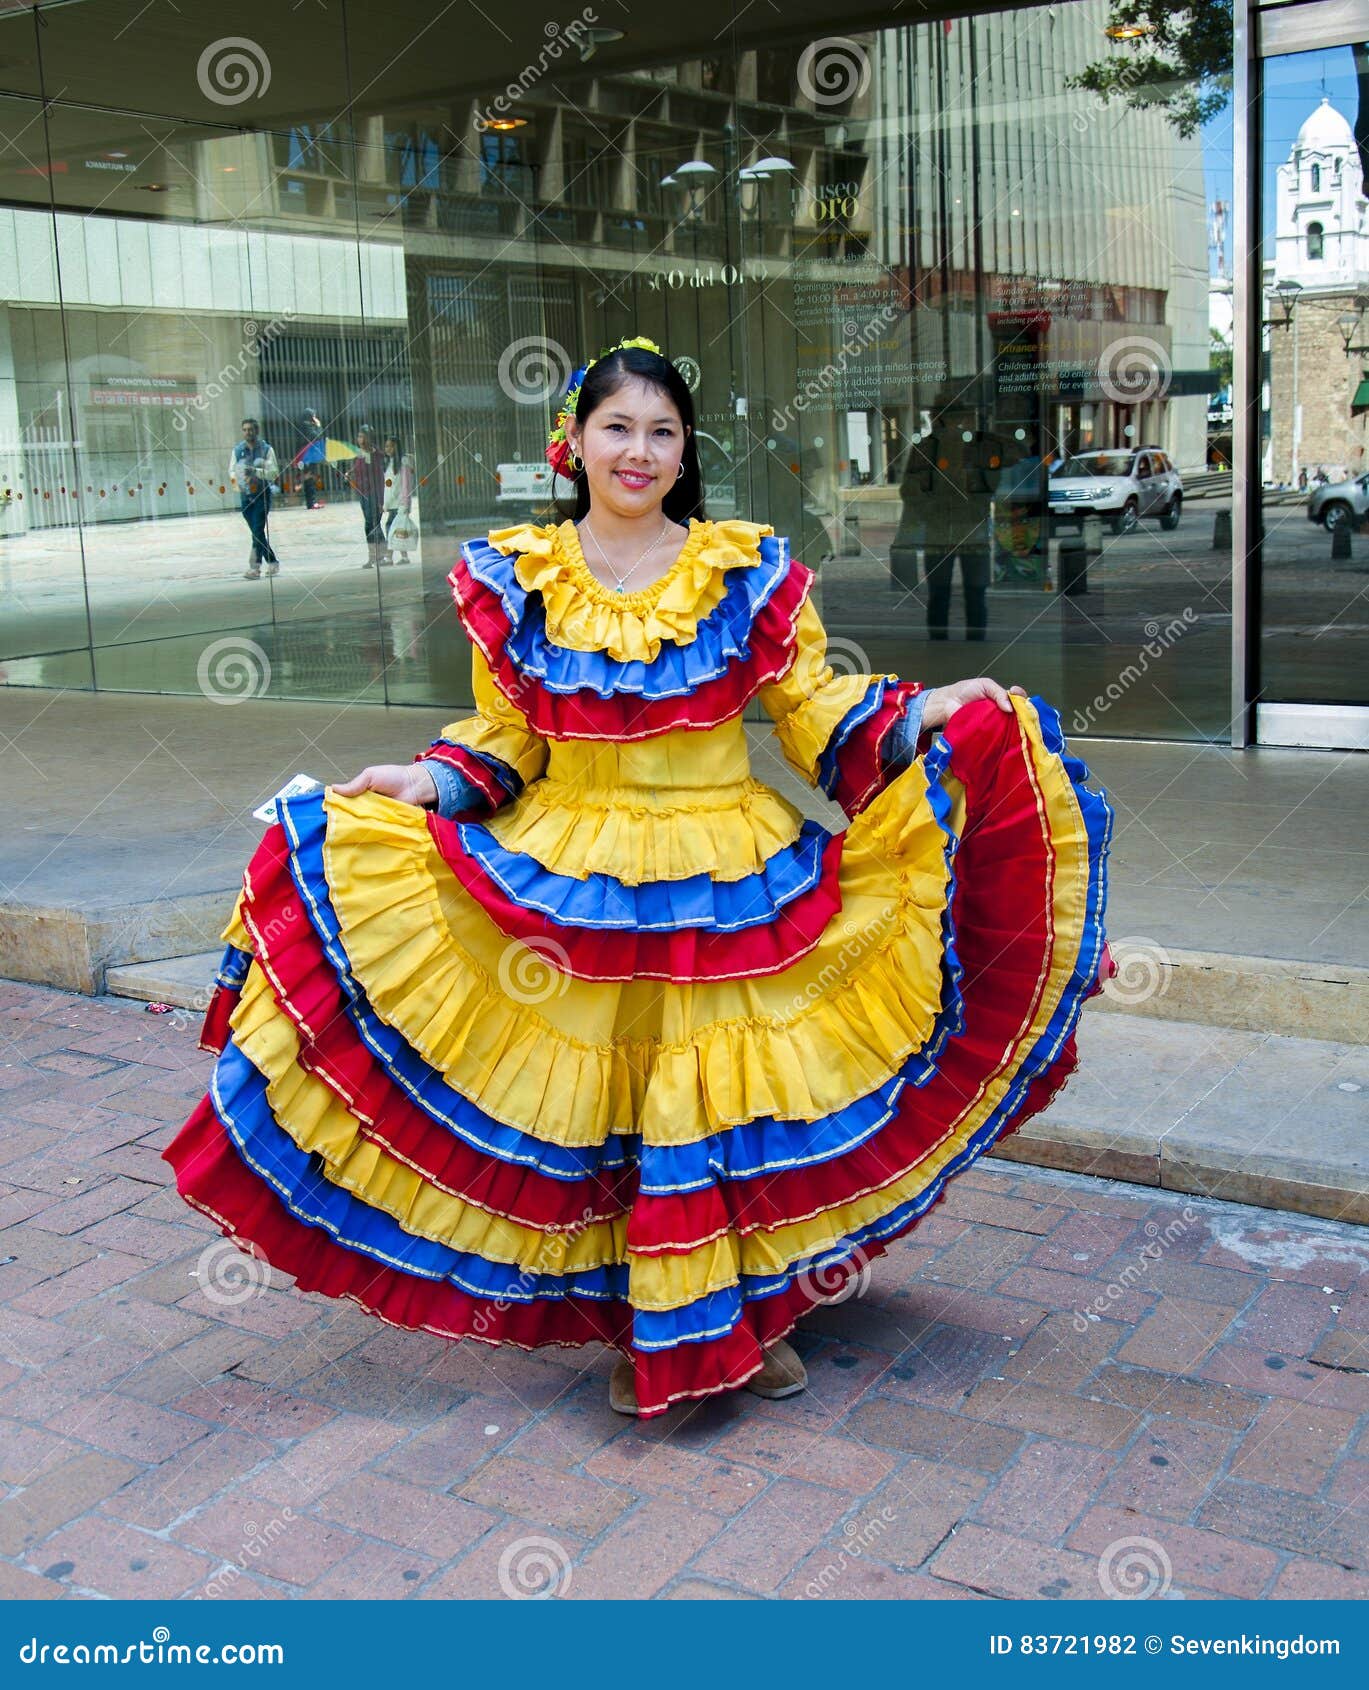 Colombian Woman 